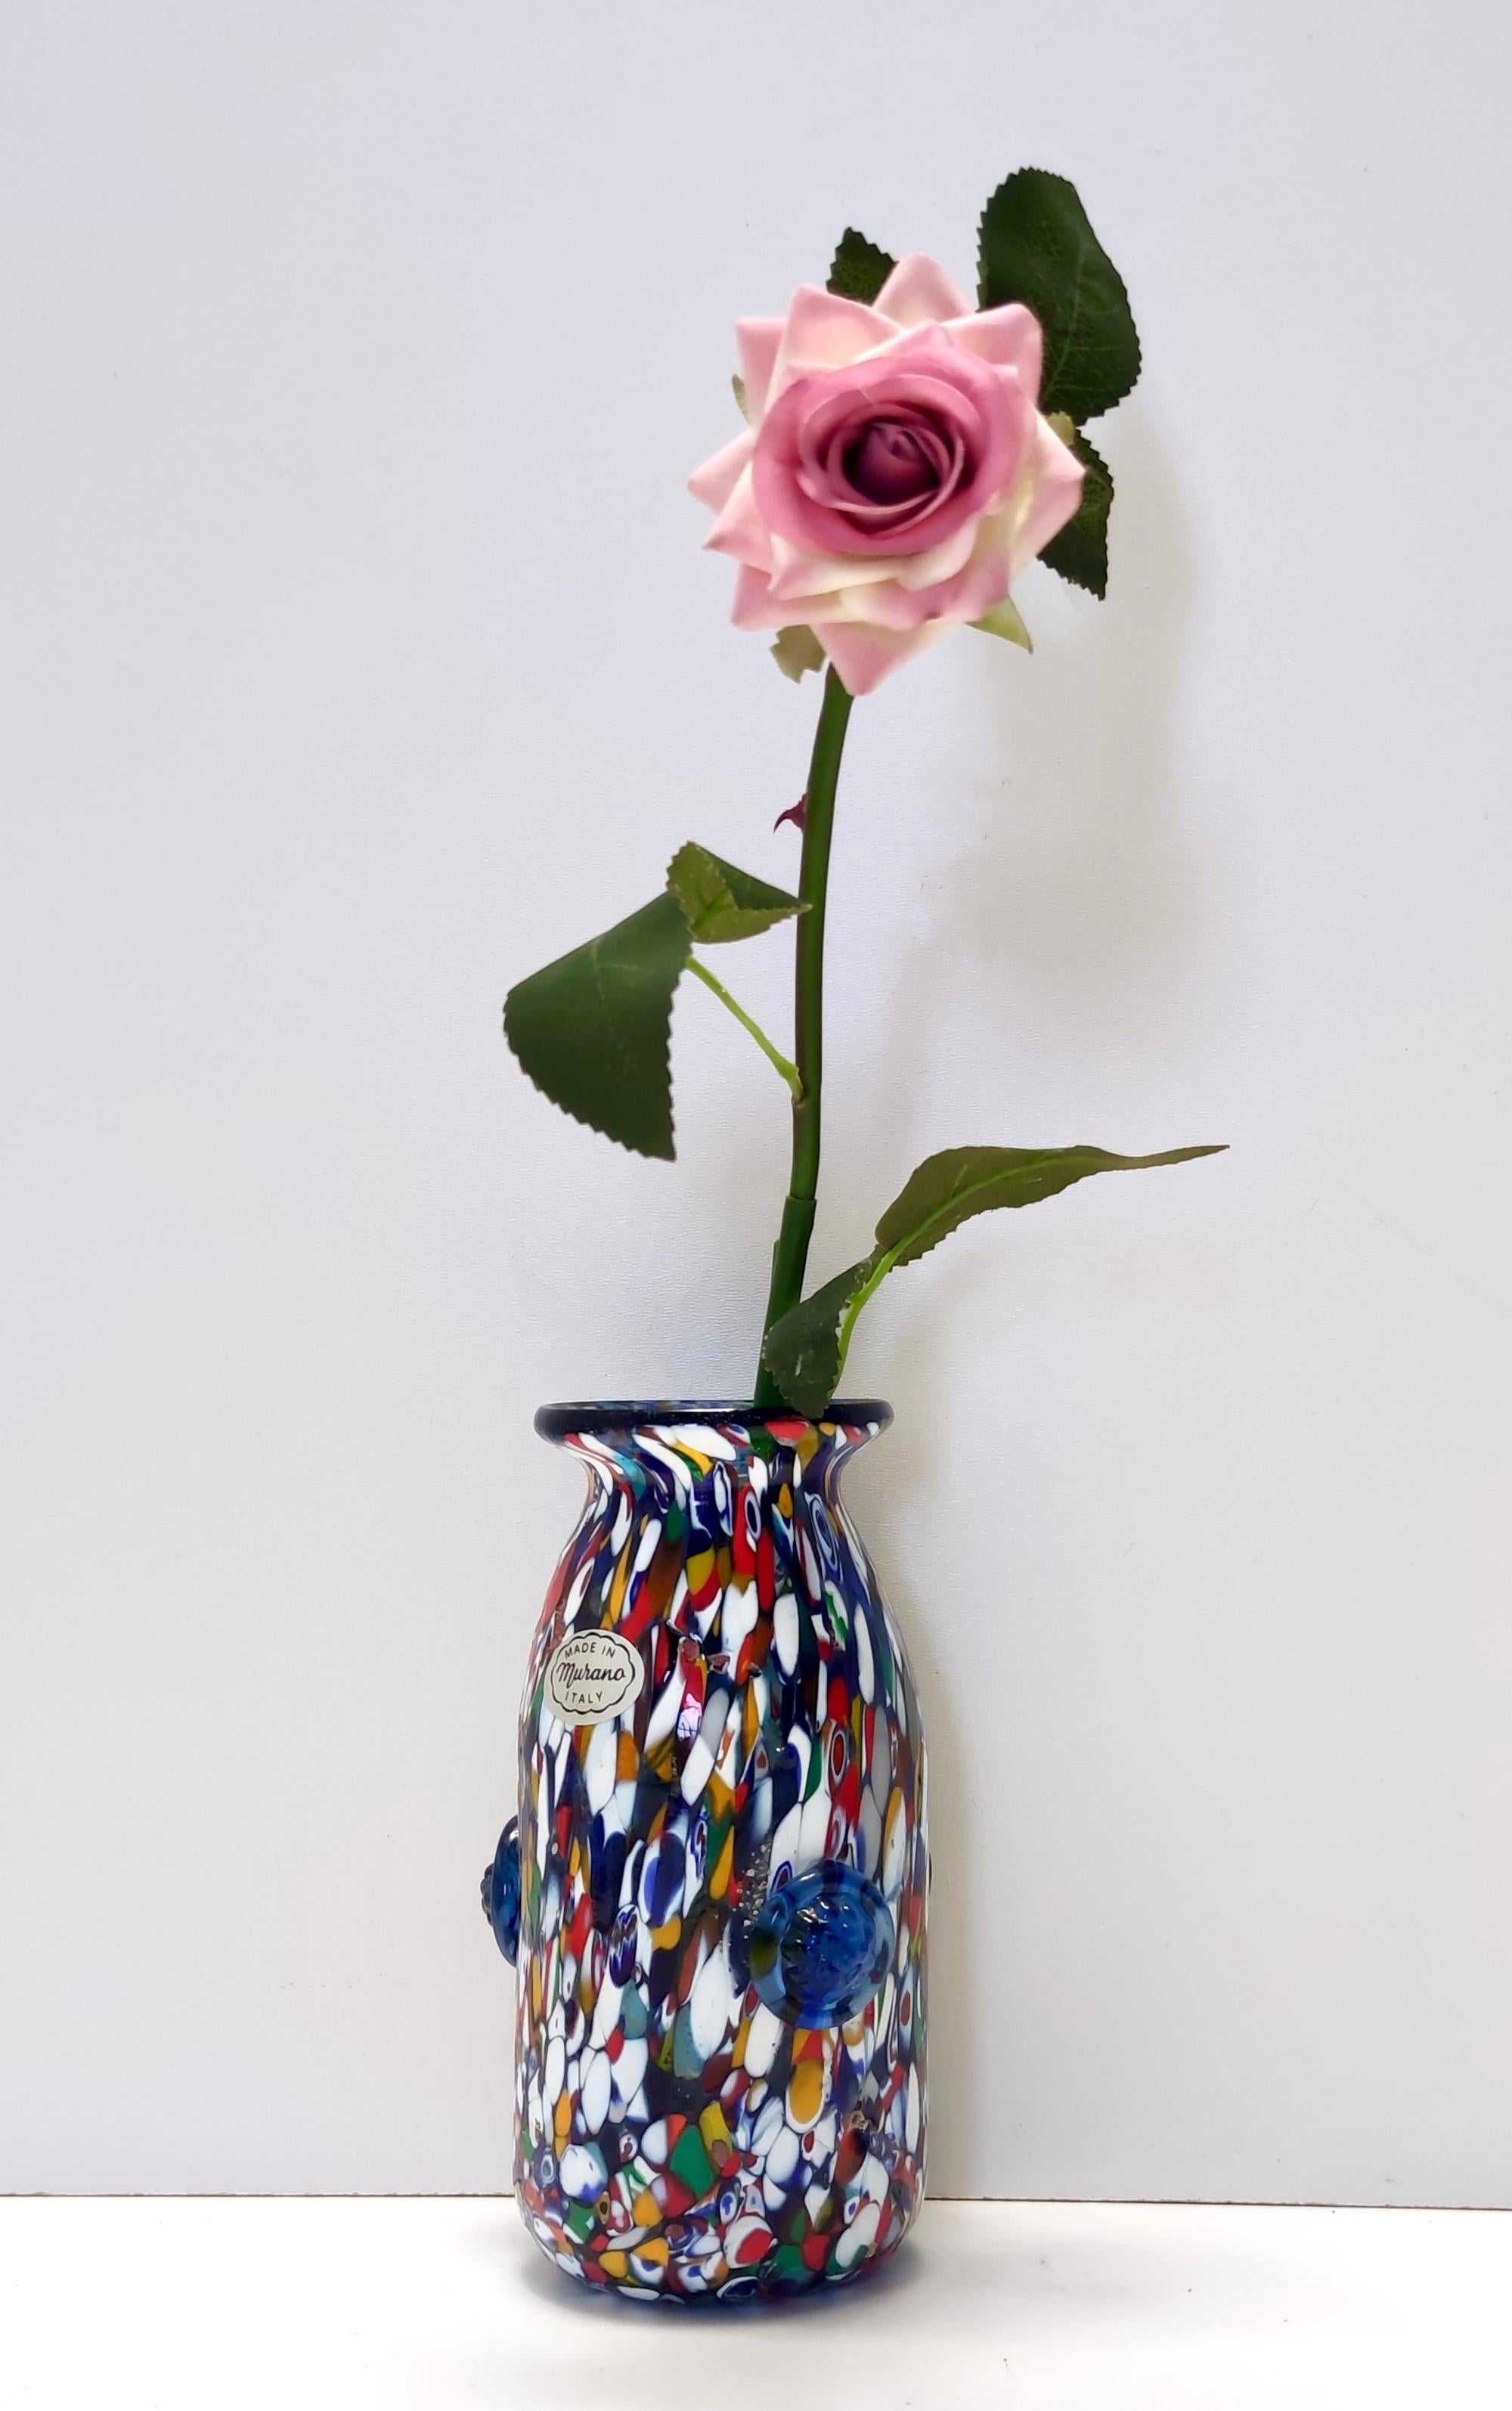 Fabriqué à Murano, Italie, années 1960. 
Il s'agit d'un vase multicolore en verre de Murano, qui est fortement attribuable au millefiori de Fratelli Toso.
On y trouve une multitude de murrines différentes, dans un arc-en-ciel de couleurs.
Ce vase